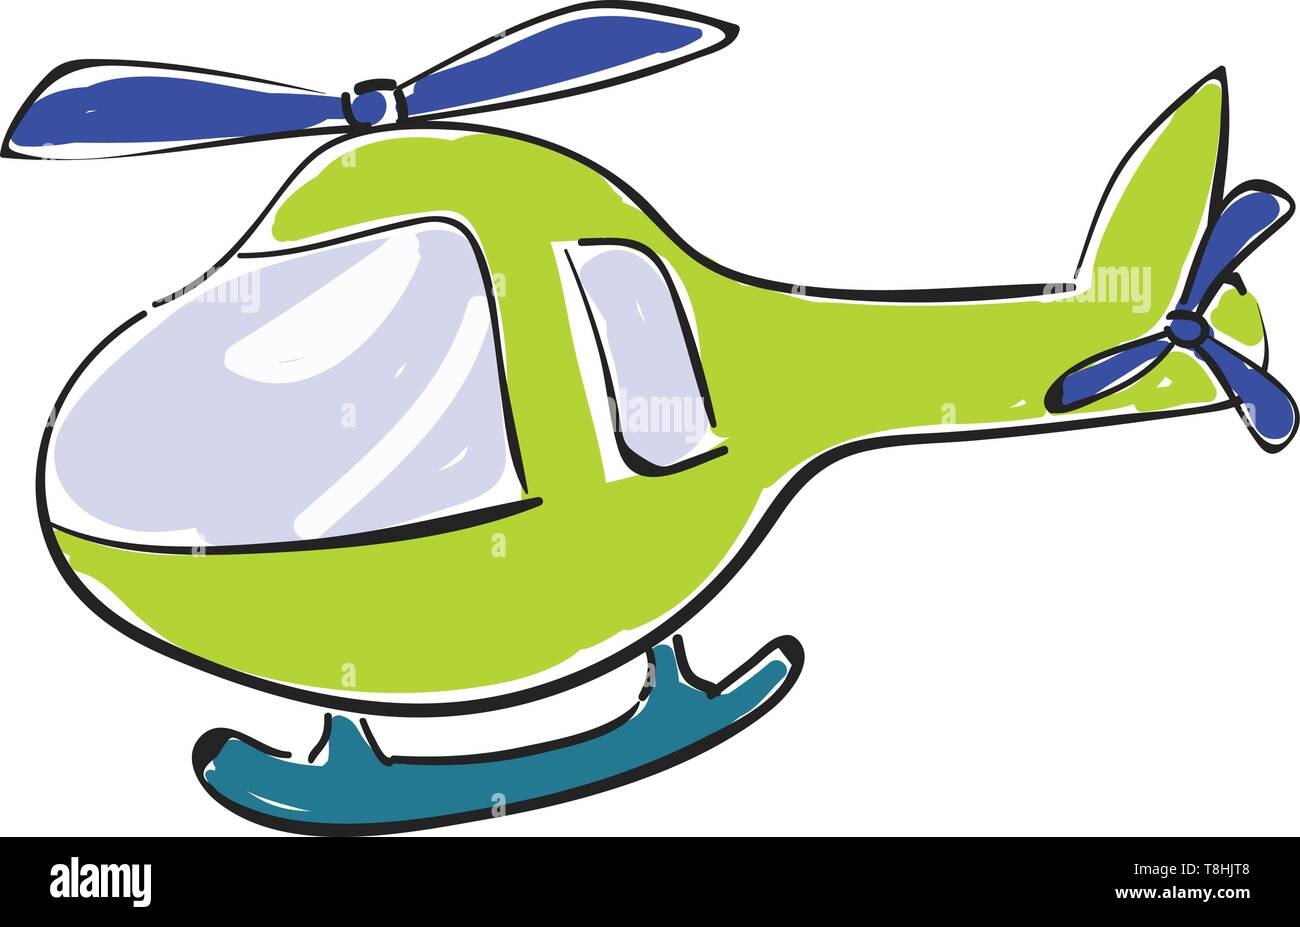 Un petit hélicoptère vert avec antidérapant, anti-couple du rotor de queue et le rotor blade dans la couleur bleue, utilisé pour le transport de personnes, de marchandises ou d'autres fournitures, ve Illustration de Vecteur